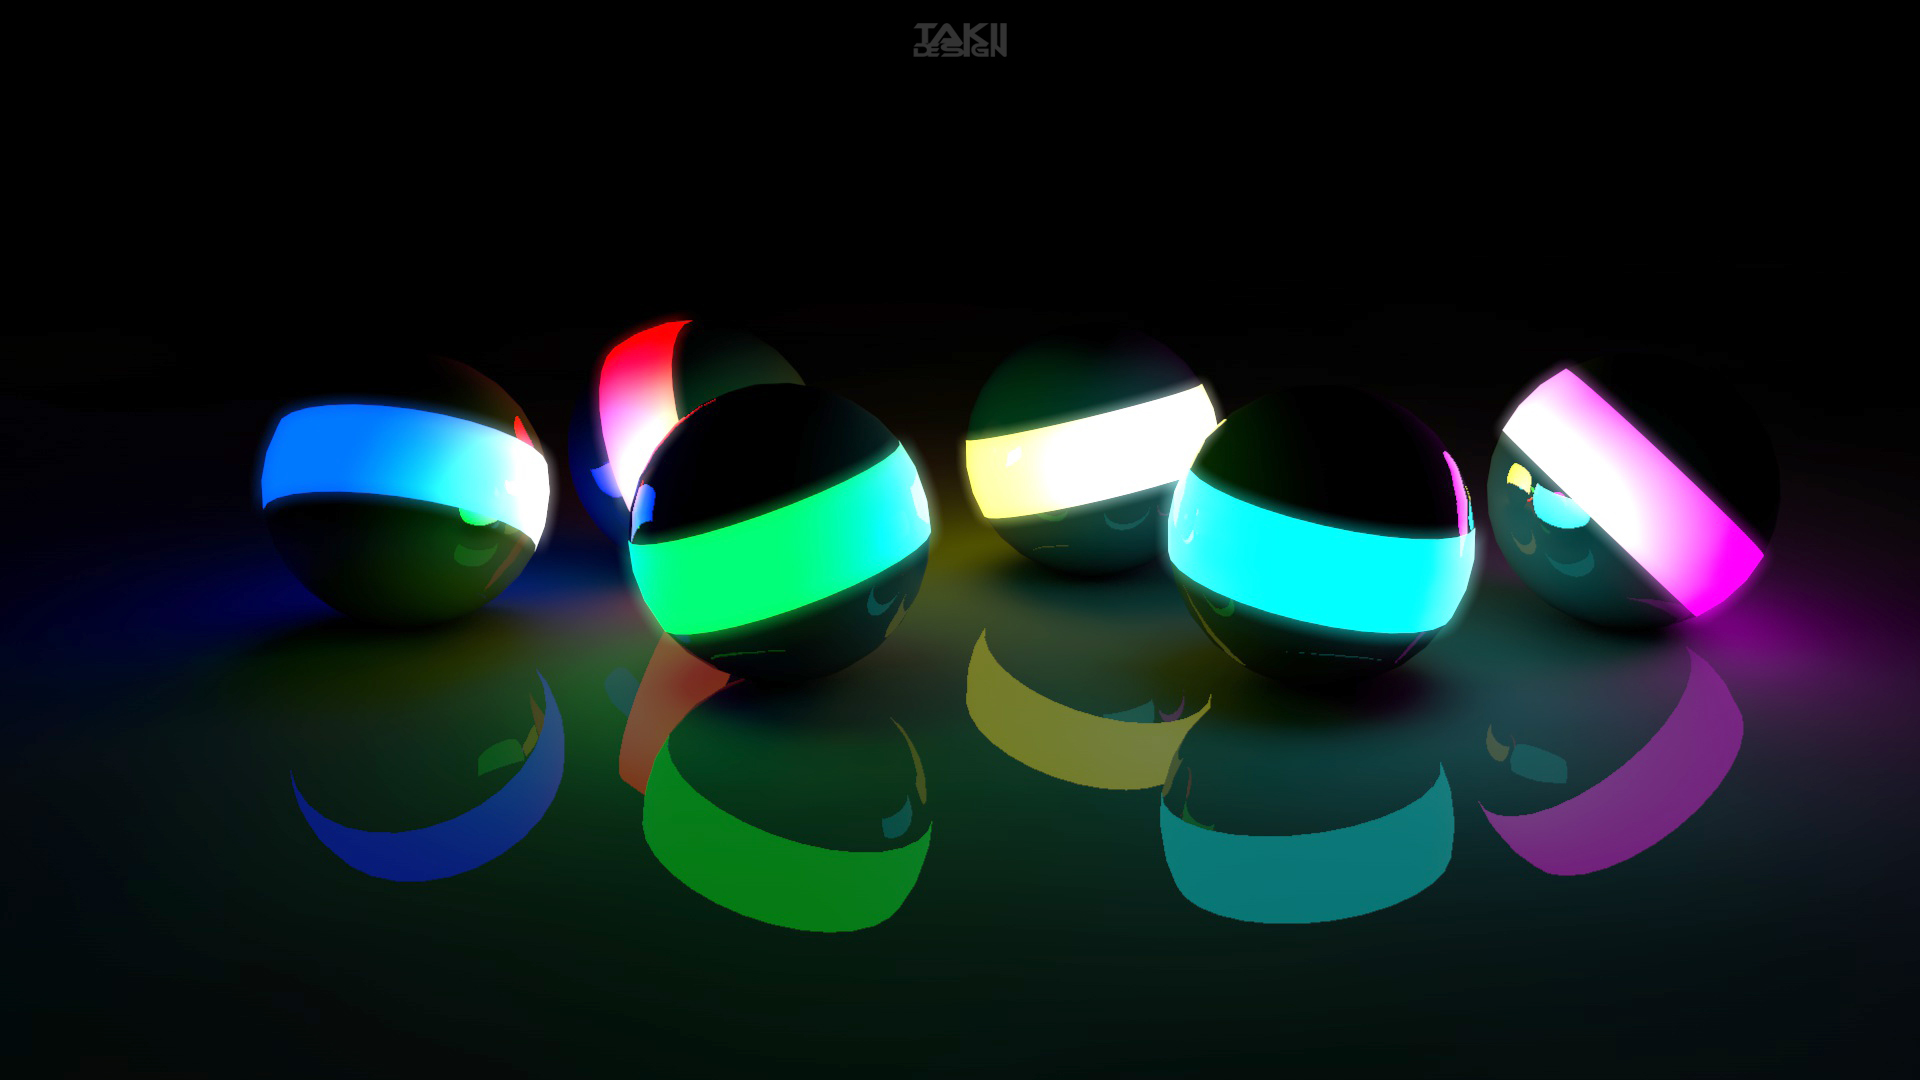 Màu sắc tươi sáng 3D tuyệt đẹp làm nổi bật các khối đèn neon trên màn hình